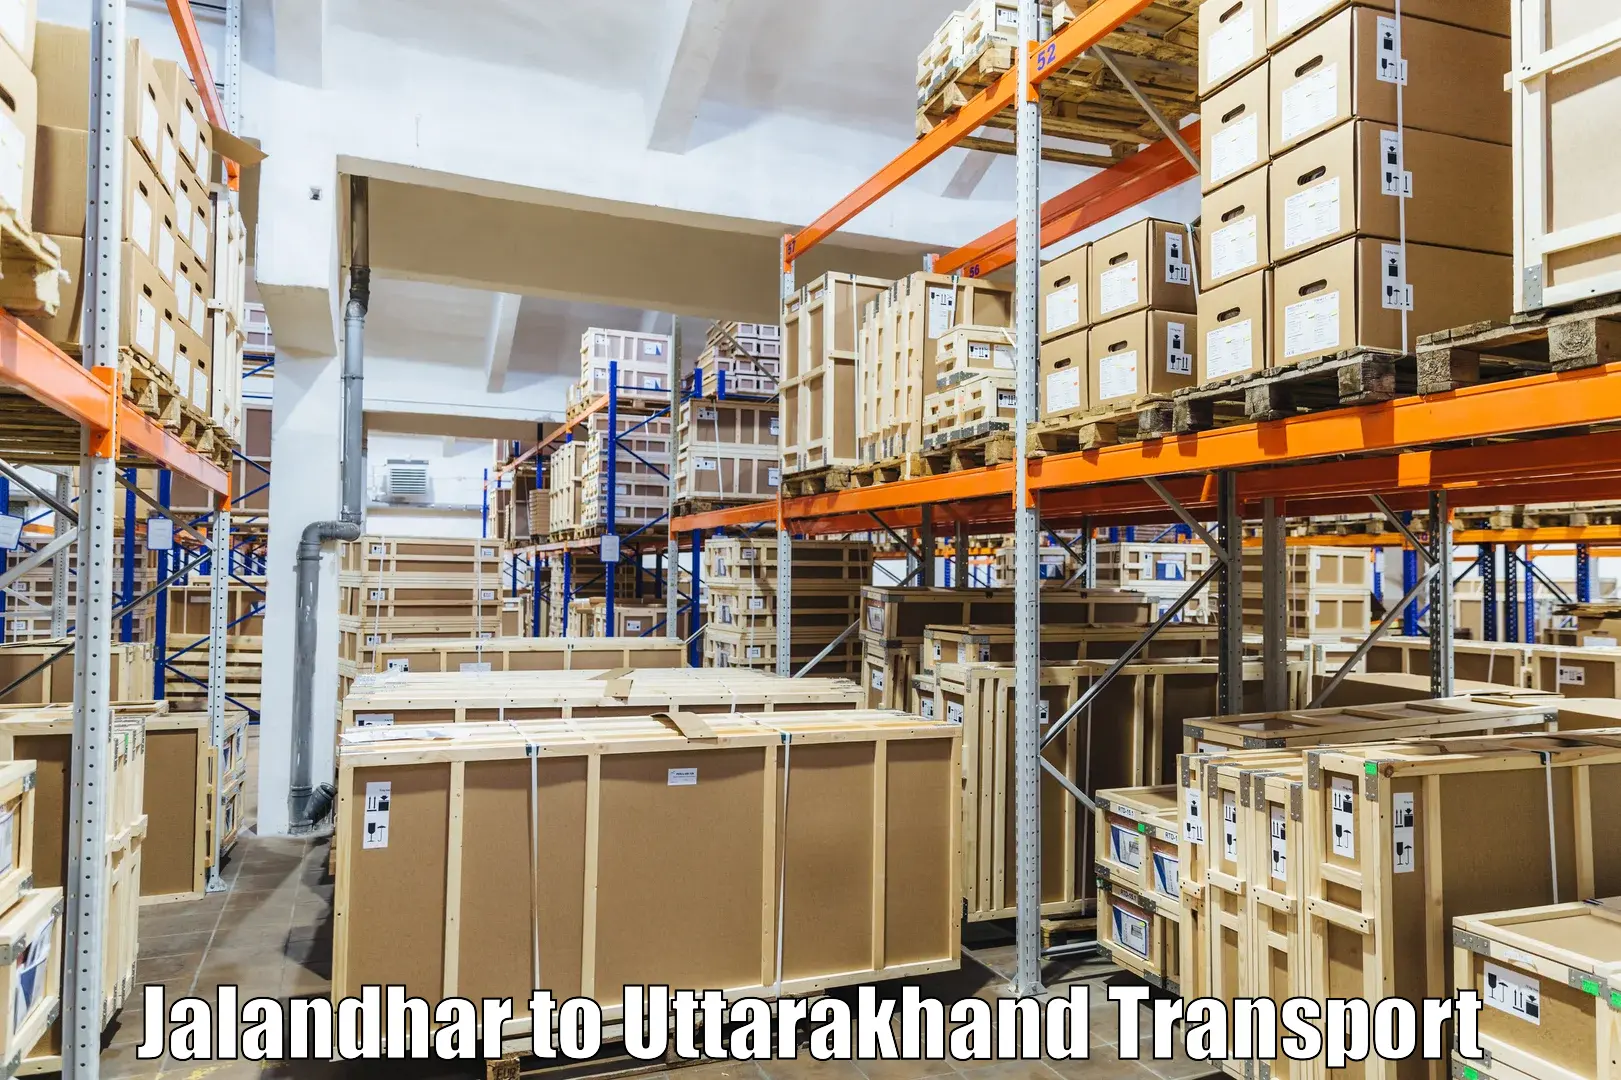 Air freight transport services Jalandhar to Dehradun